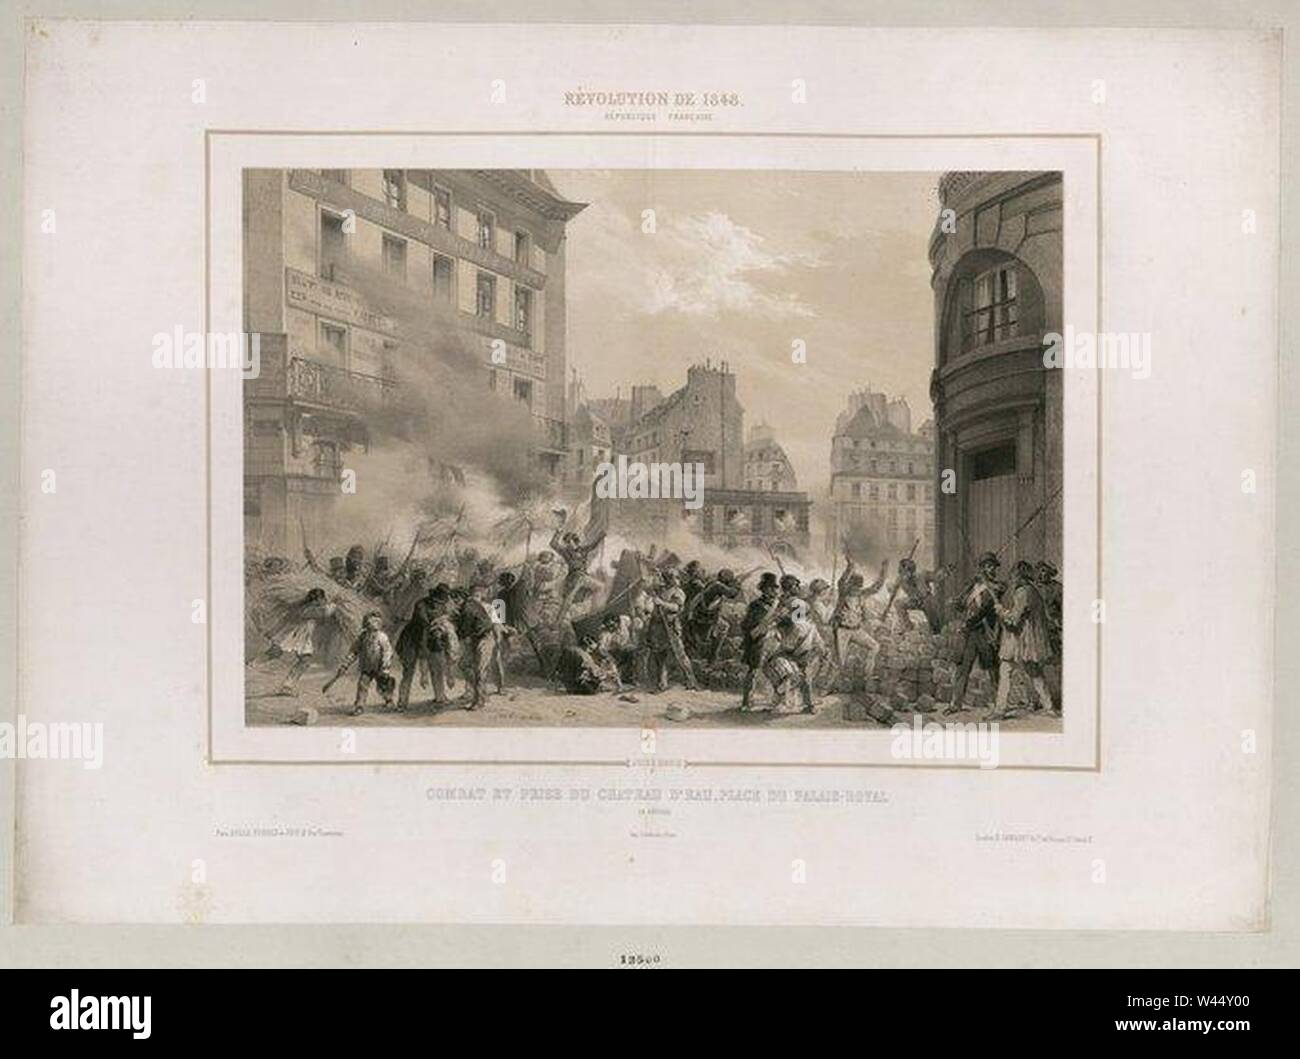 Combat et prise du Château d'Eau place du Palais-Royal 24 Février 1848. Stock Photo